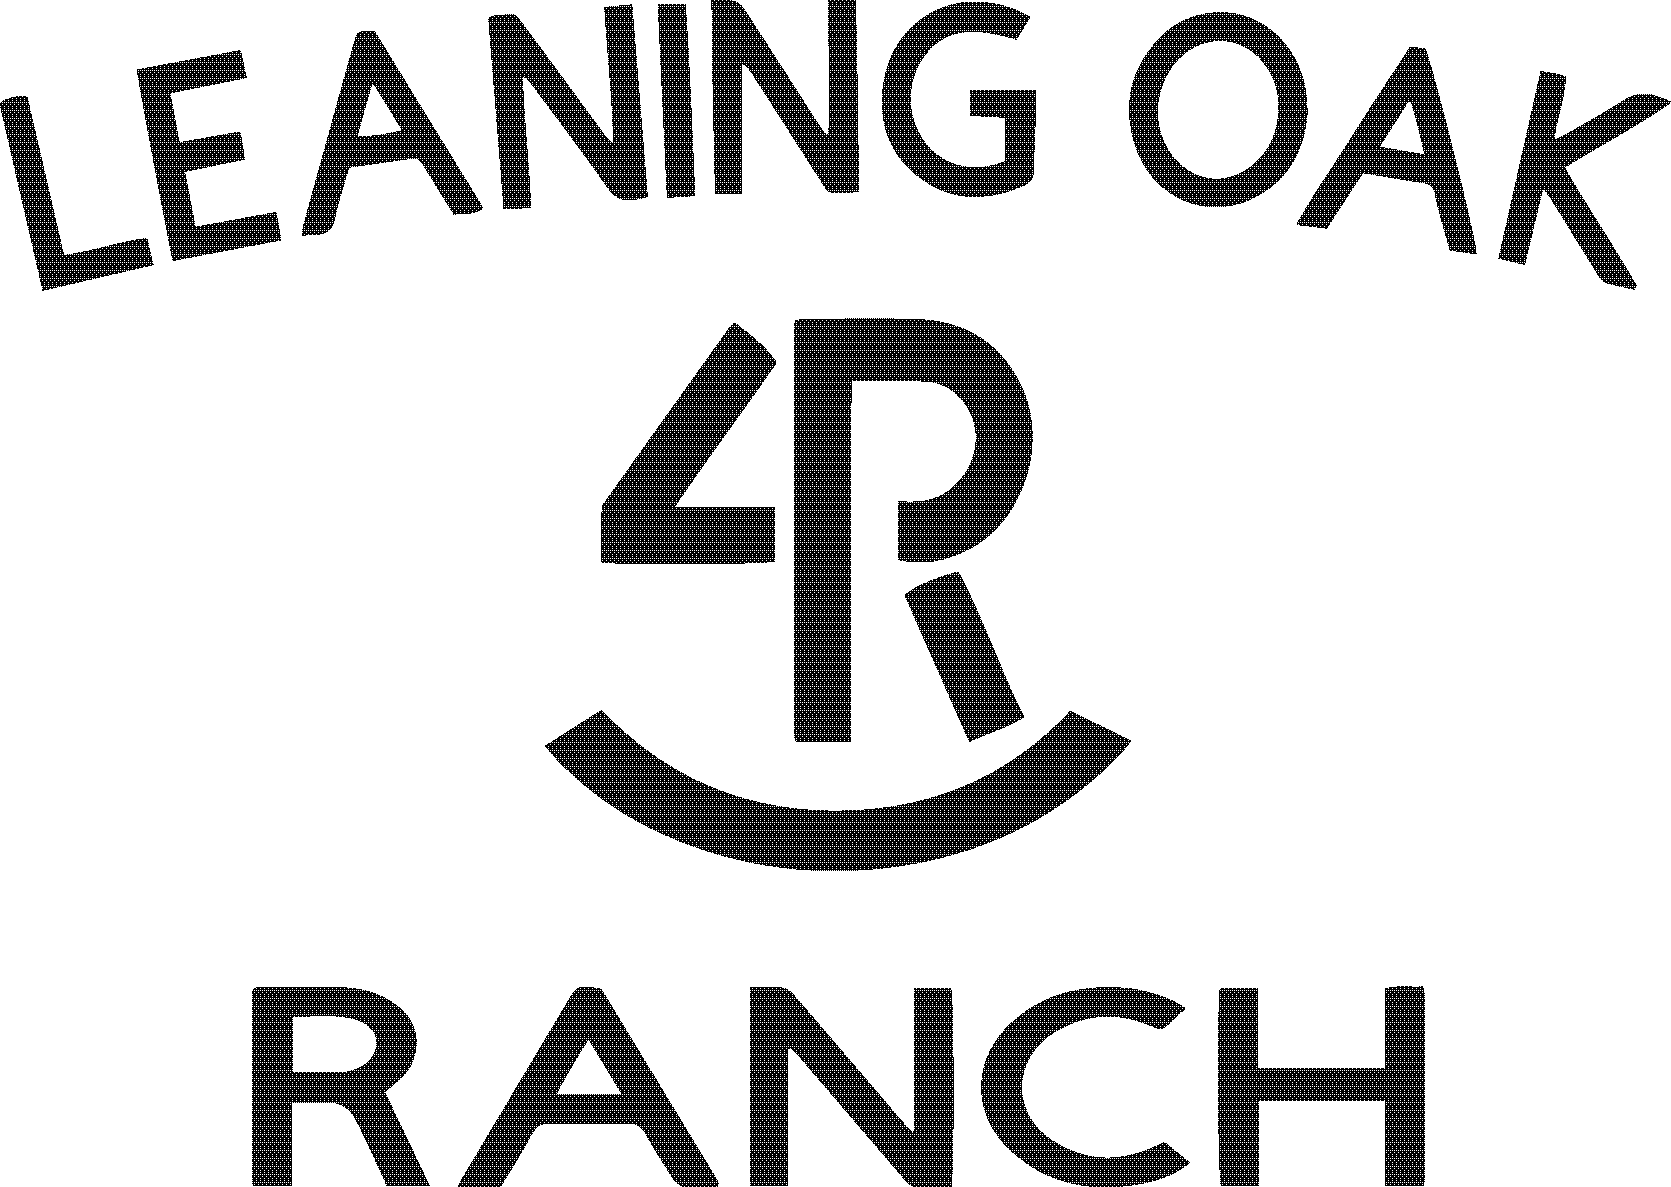 4Leaning Oak Ranch